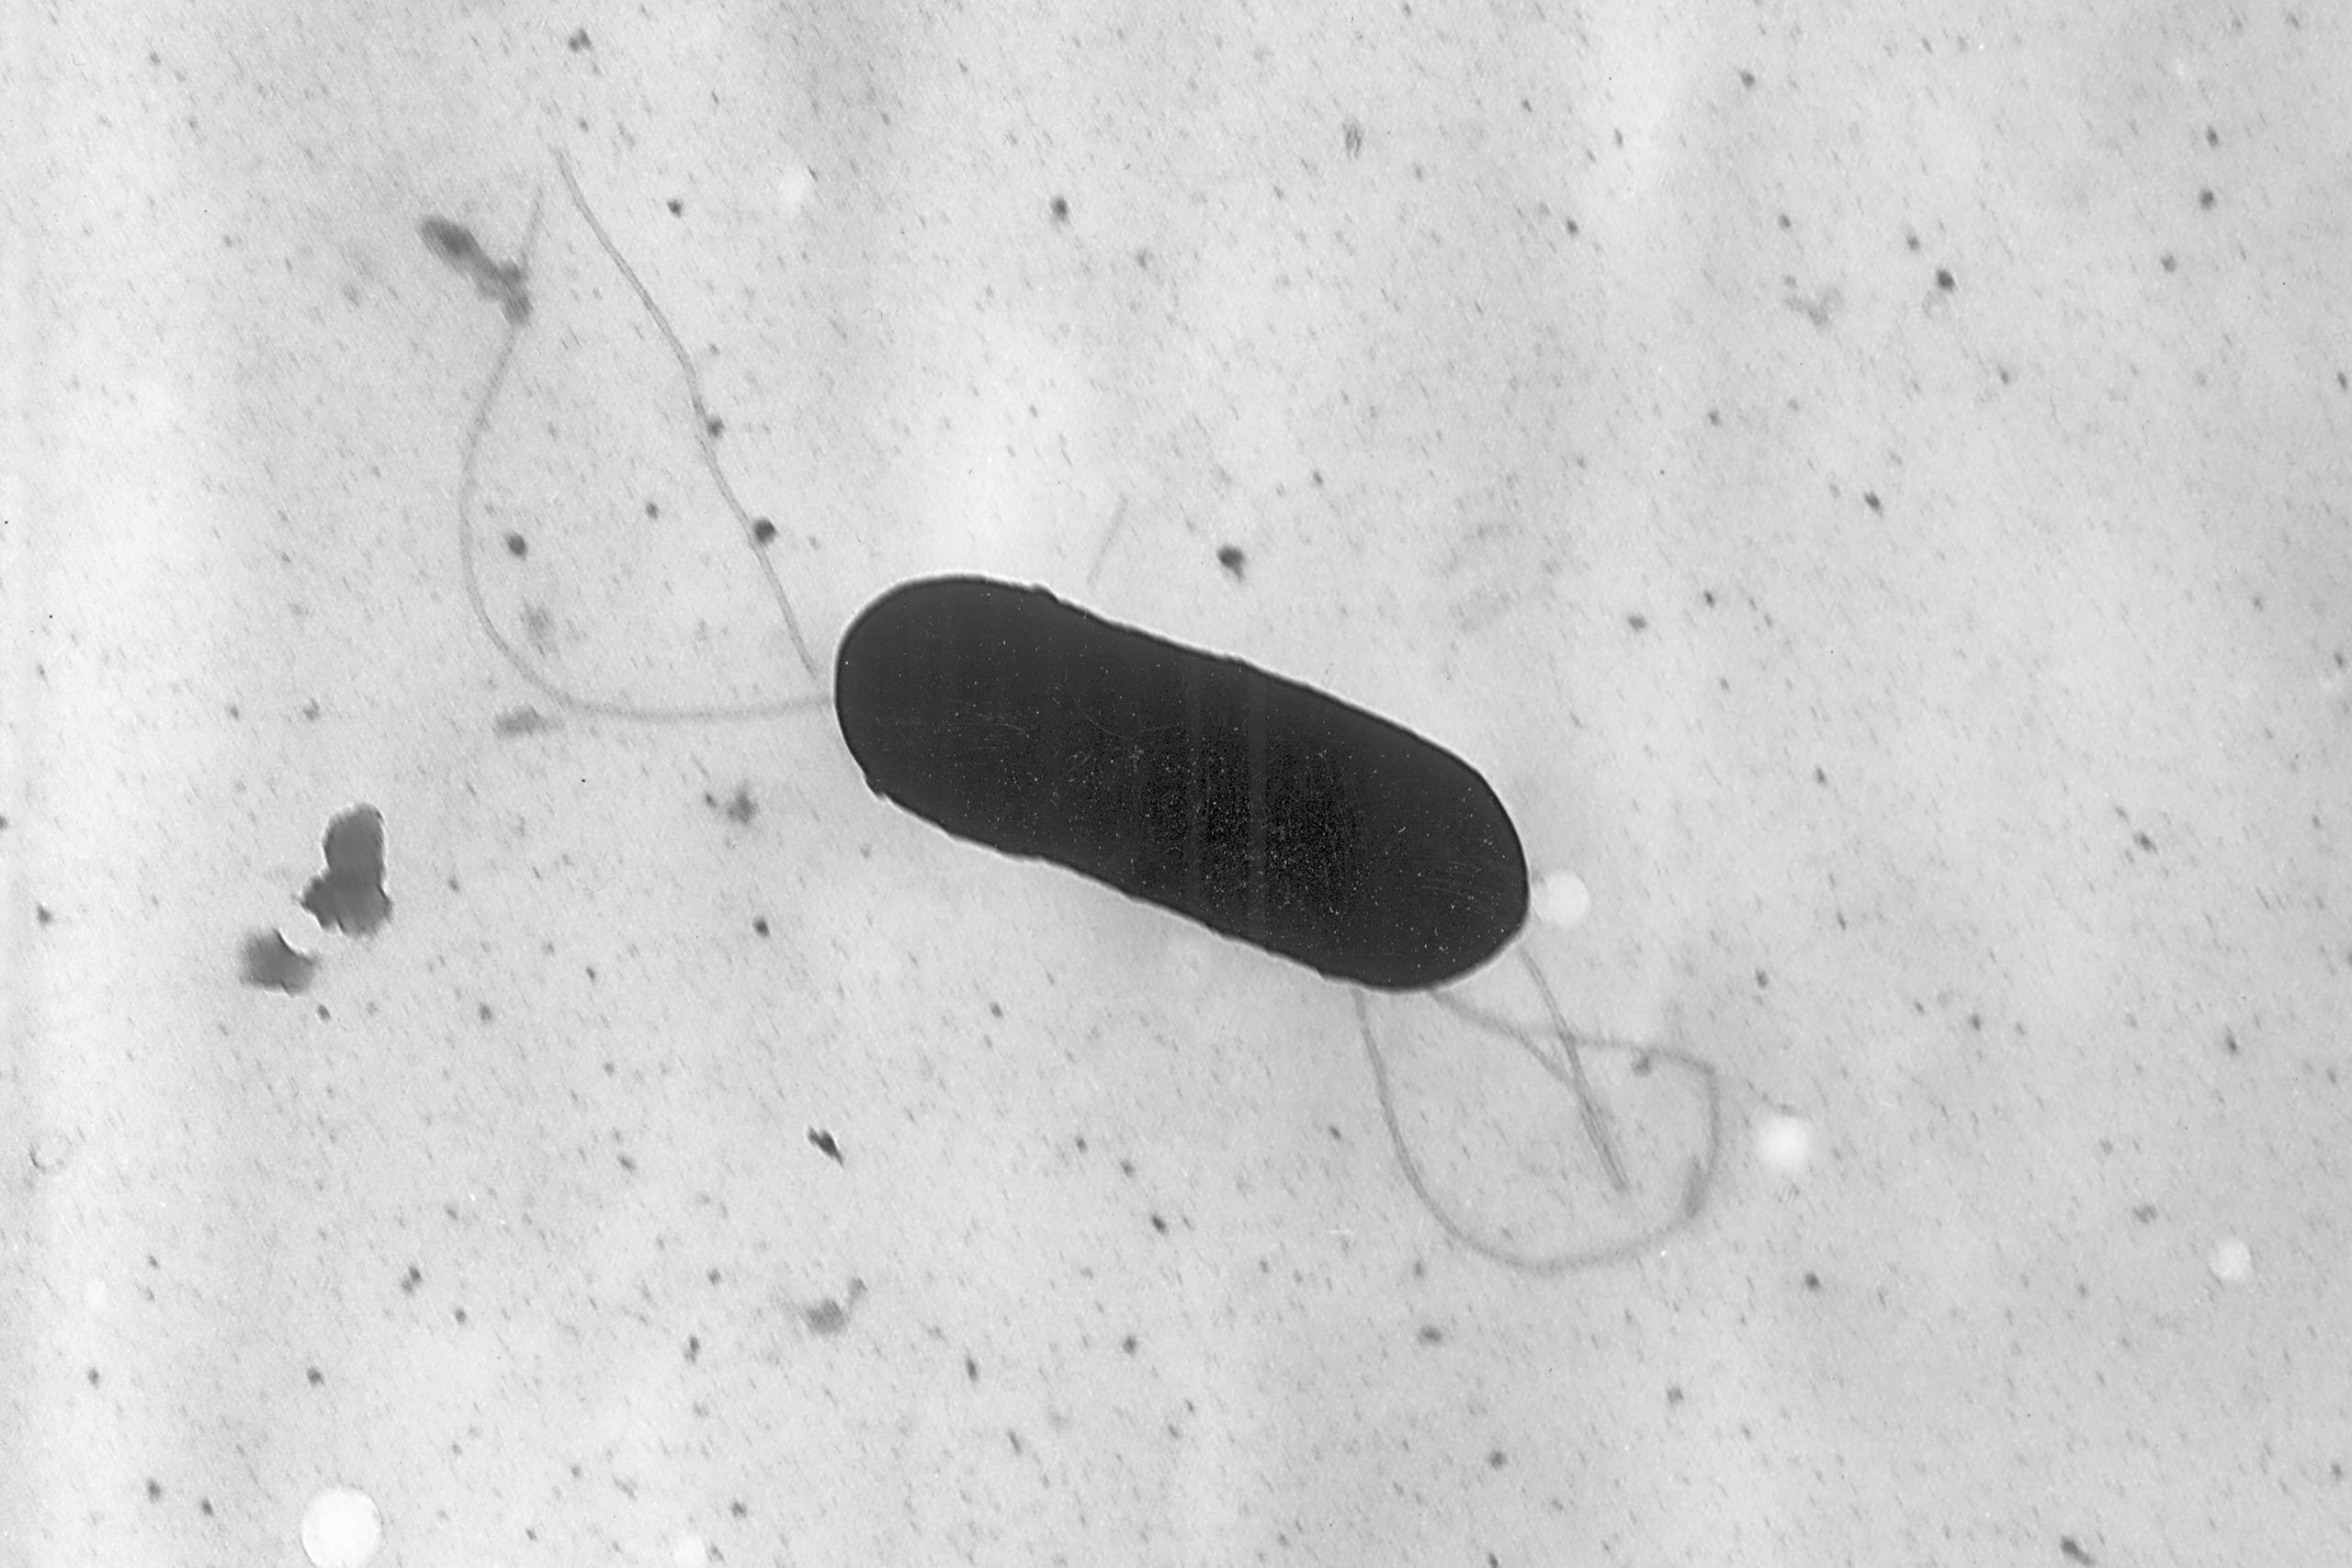 Esta imagen tomada con un microscopio electrónico y facilitada por los CDC muestra una bacteria Listeria monocytogenes que causa la listeriosis.